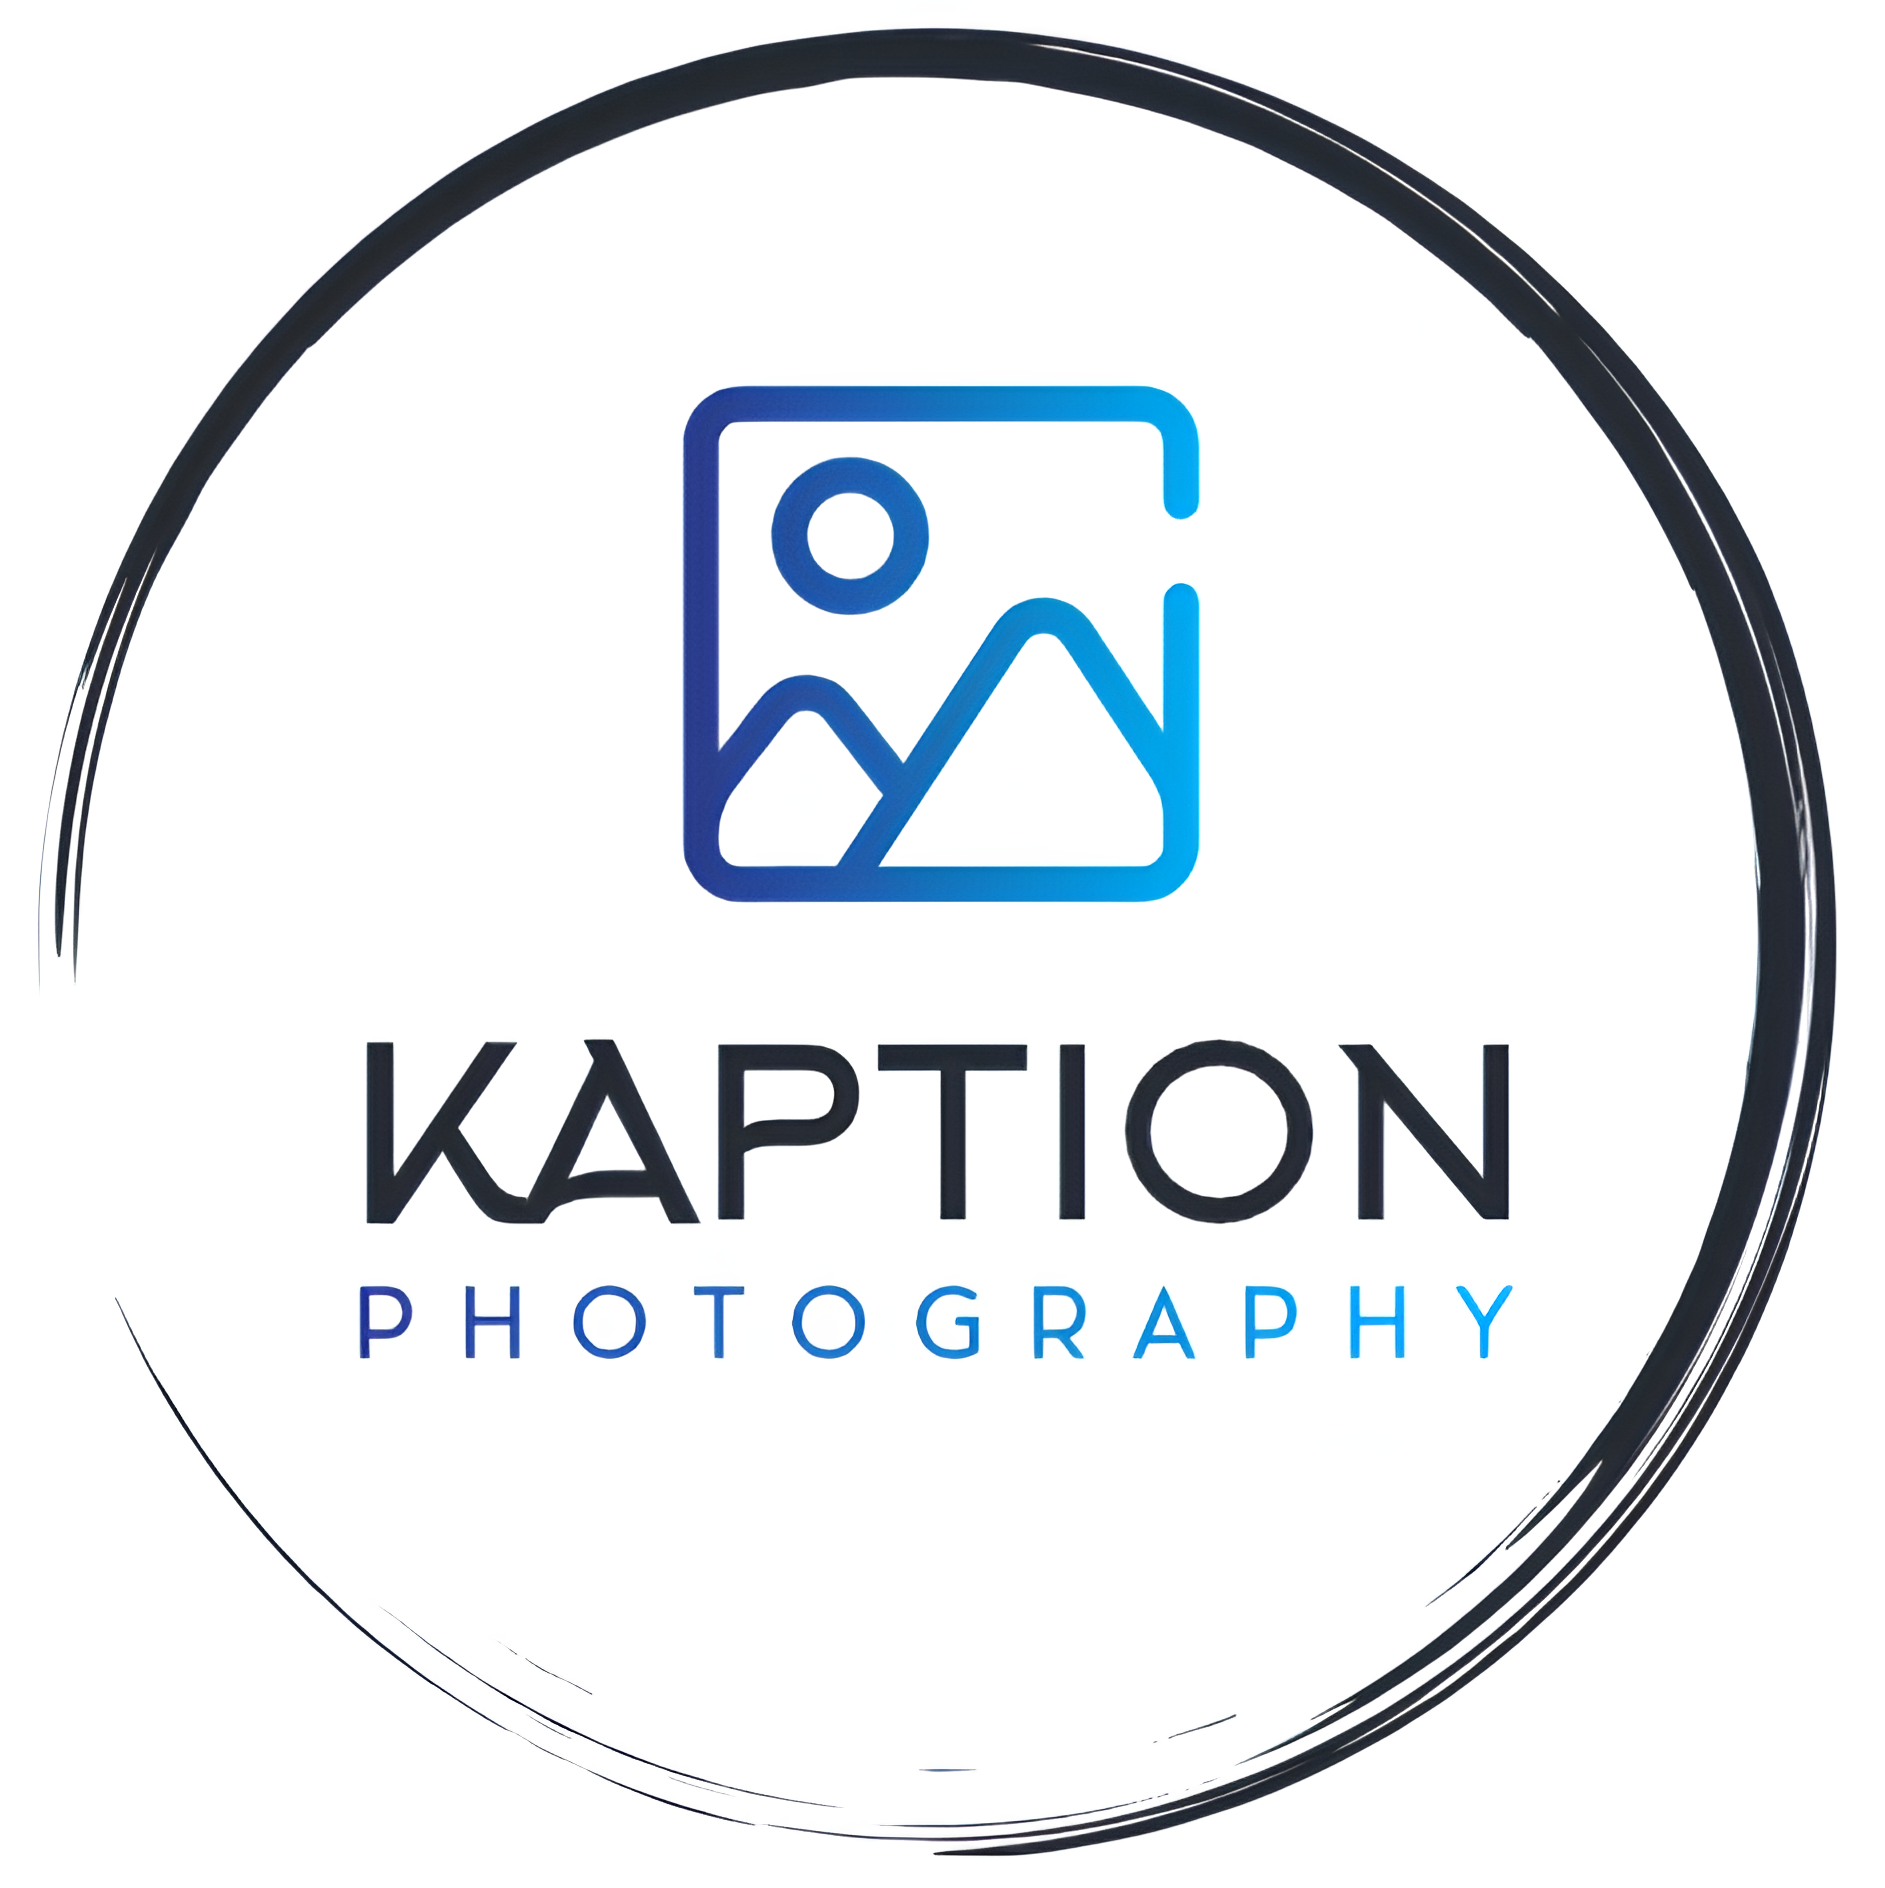 Kaption Photography